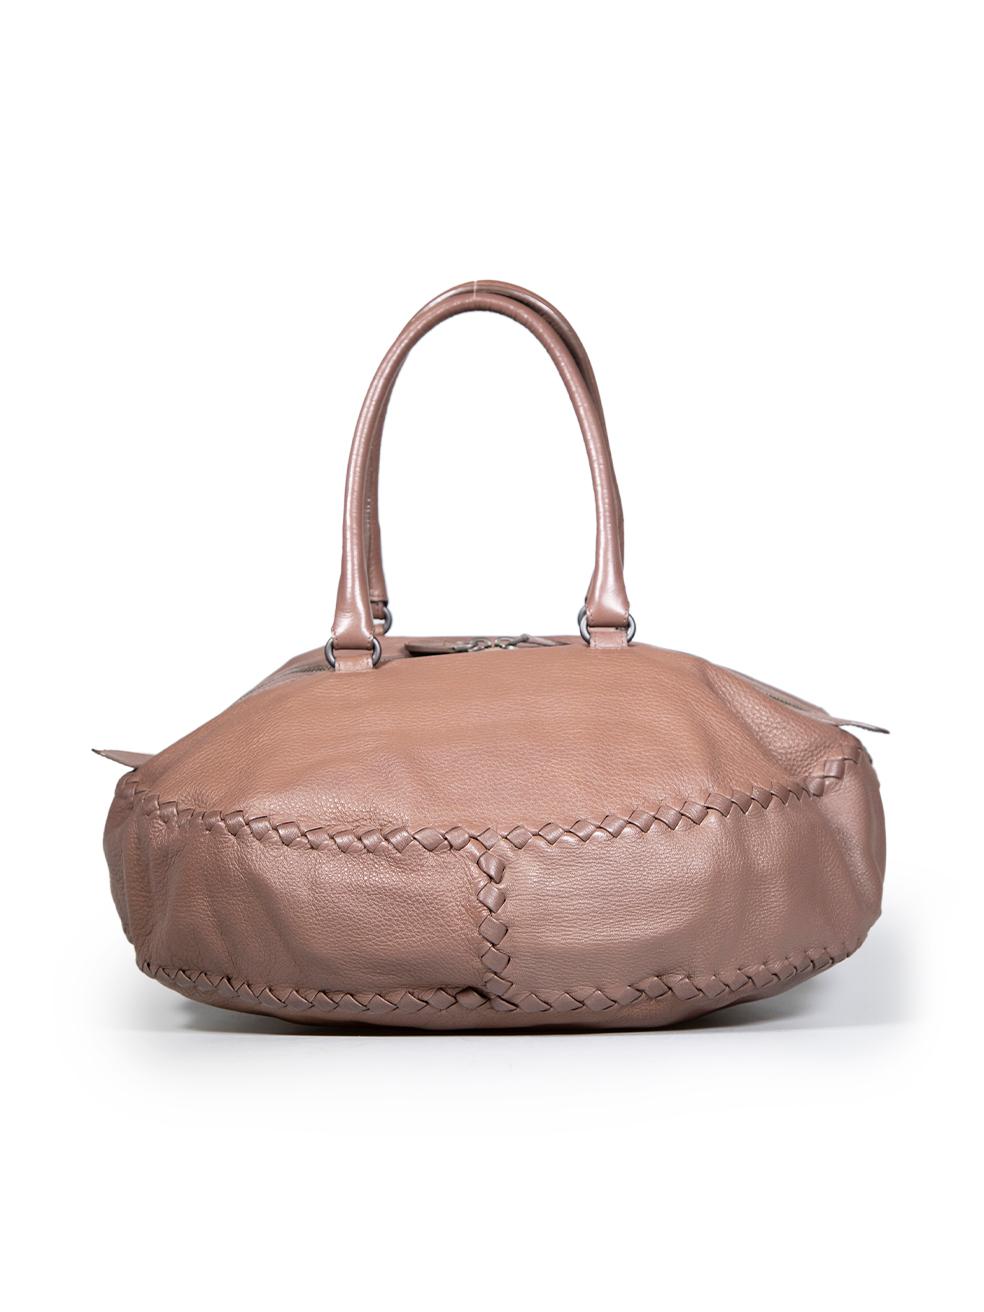 Bottega Veneta Brown Intrecciato Leather Curvo Bowling Bag In Good Condition For Sale In London, GB